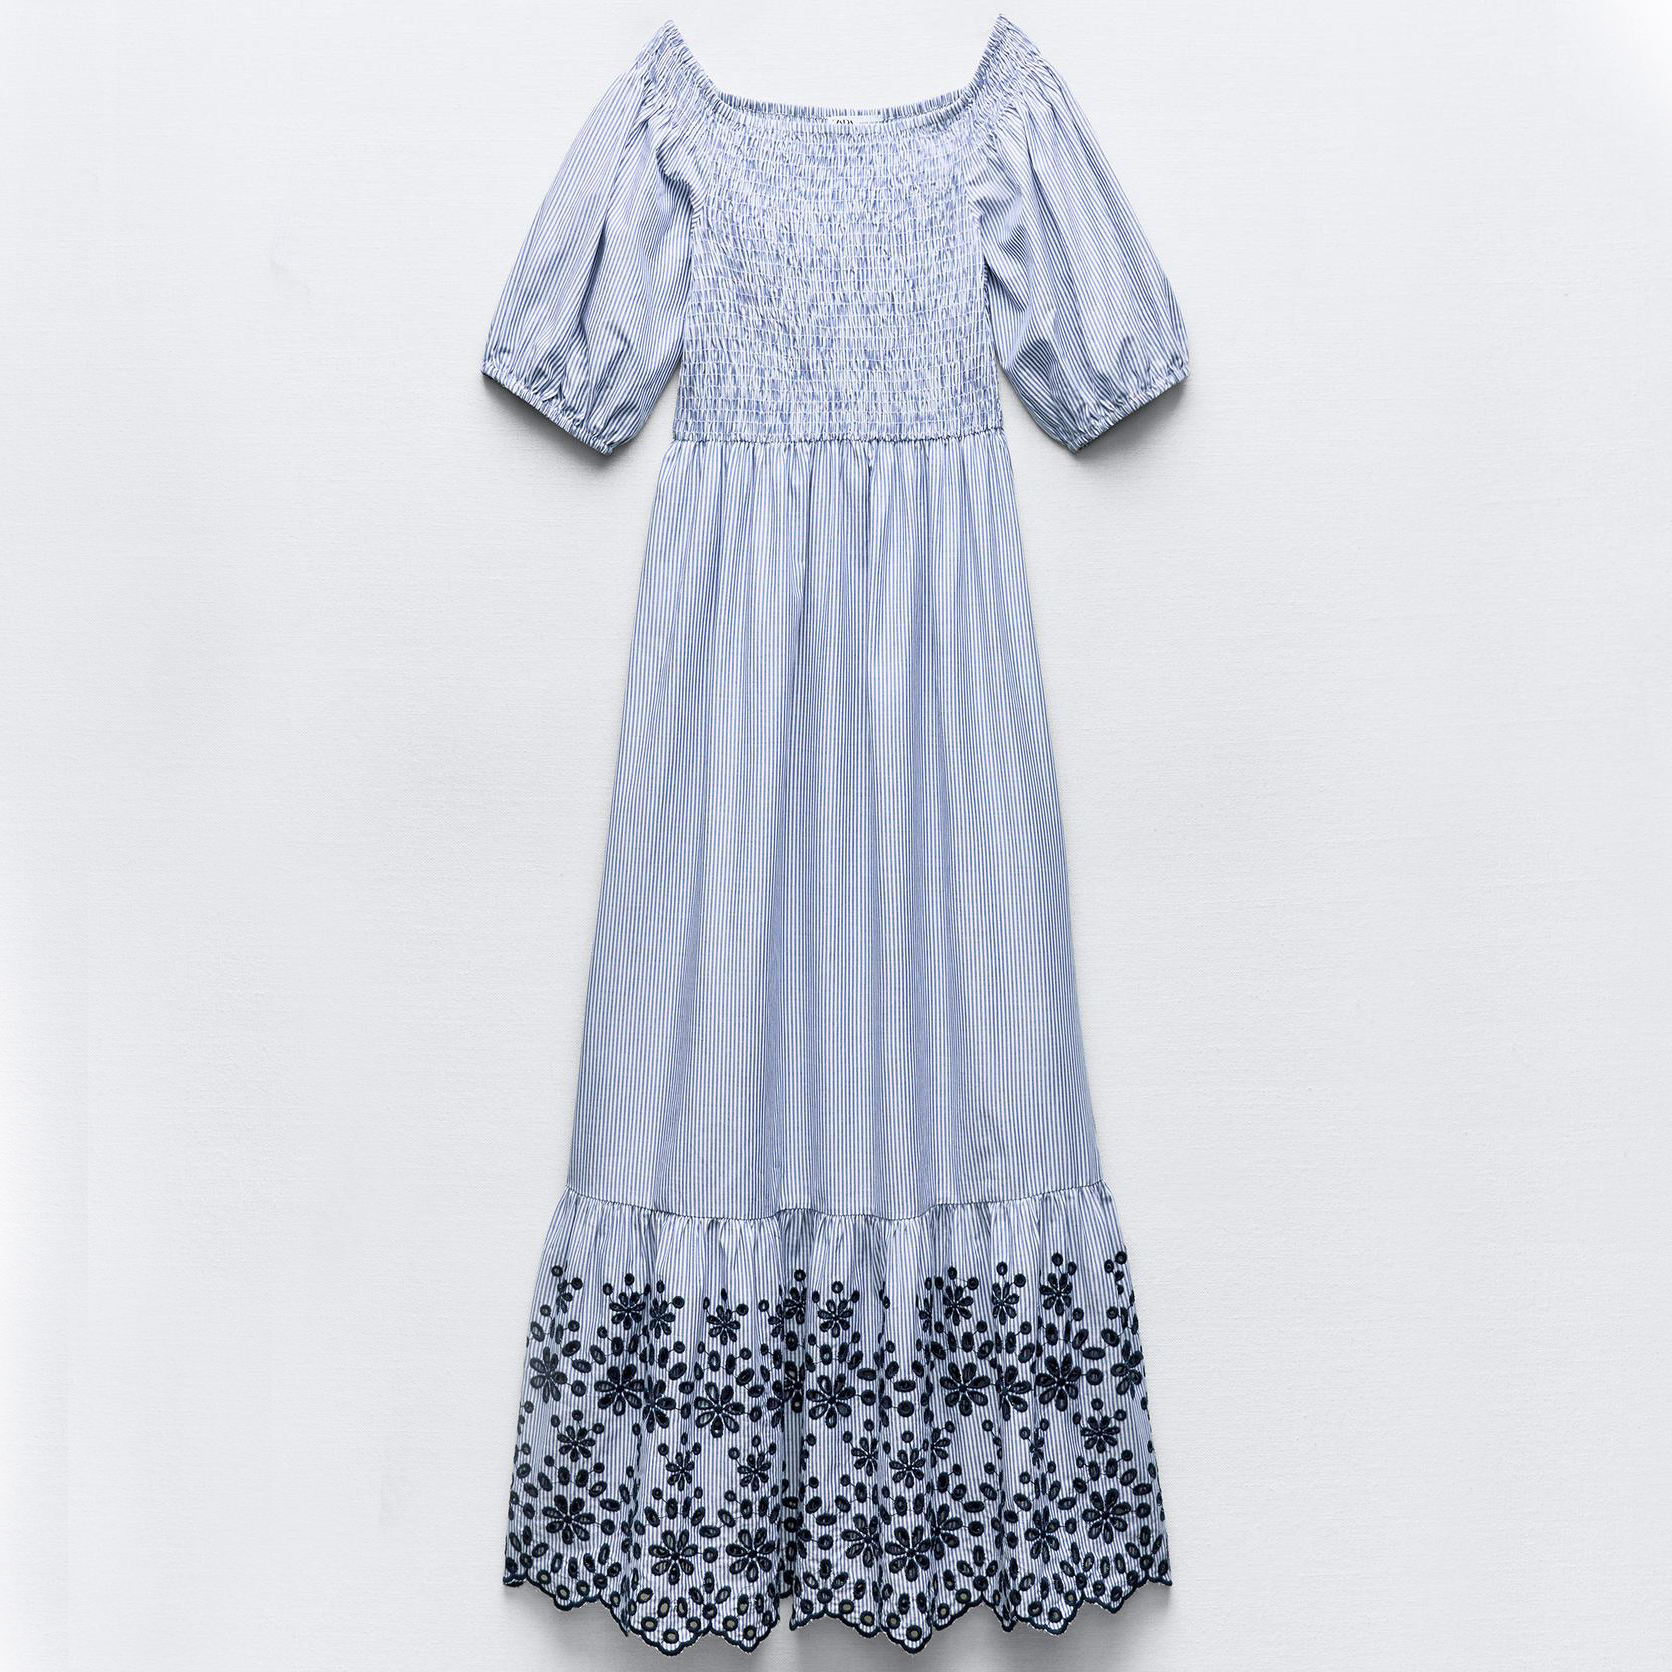 Платье Zara Striped With Cutwork Embroidery, голубой/белый рубашка zara striped with embroidery голубой белый